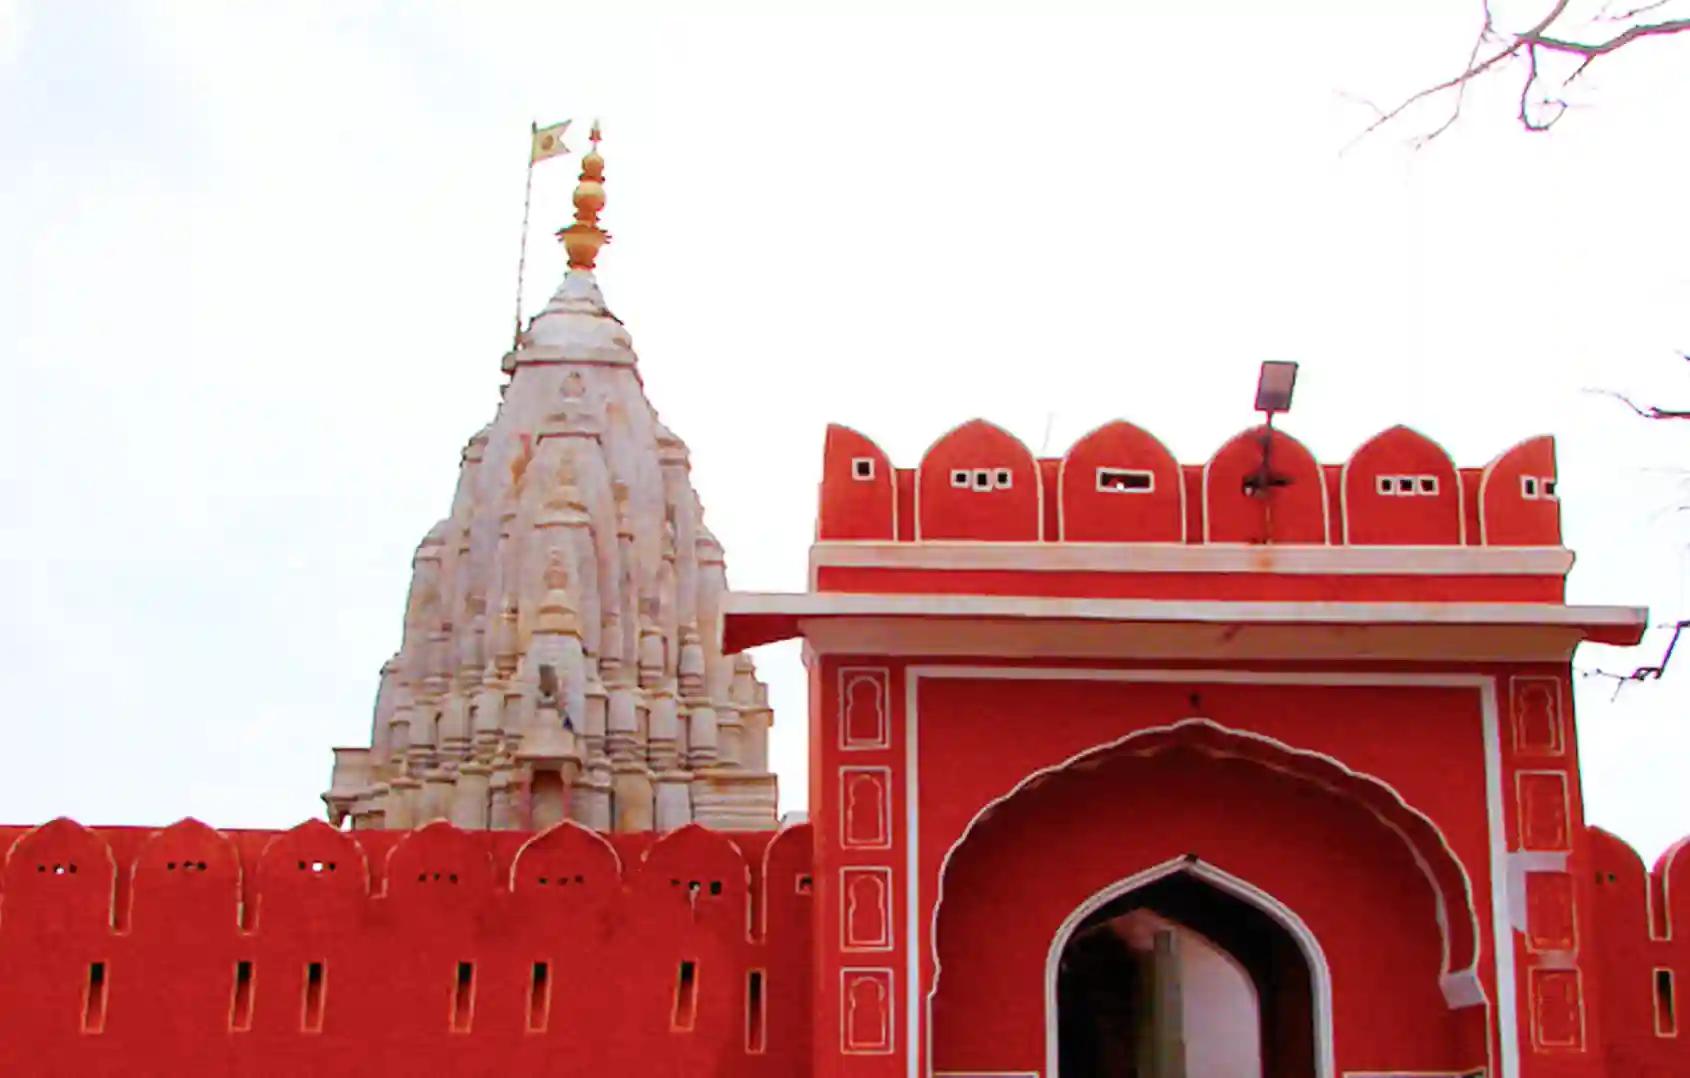 श्री गलताजी सूर्य मंदिर, जयपुर, राजस्थान